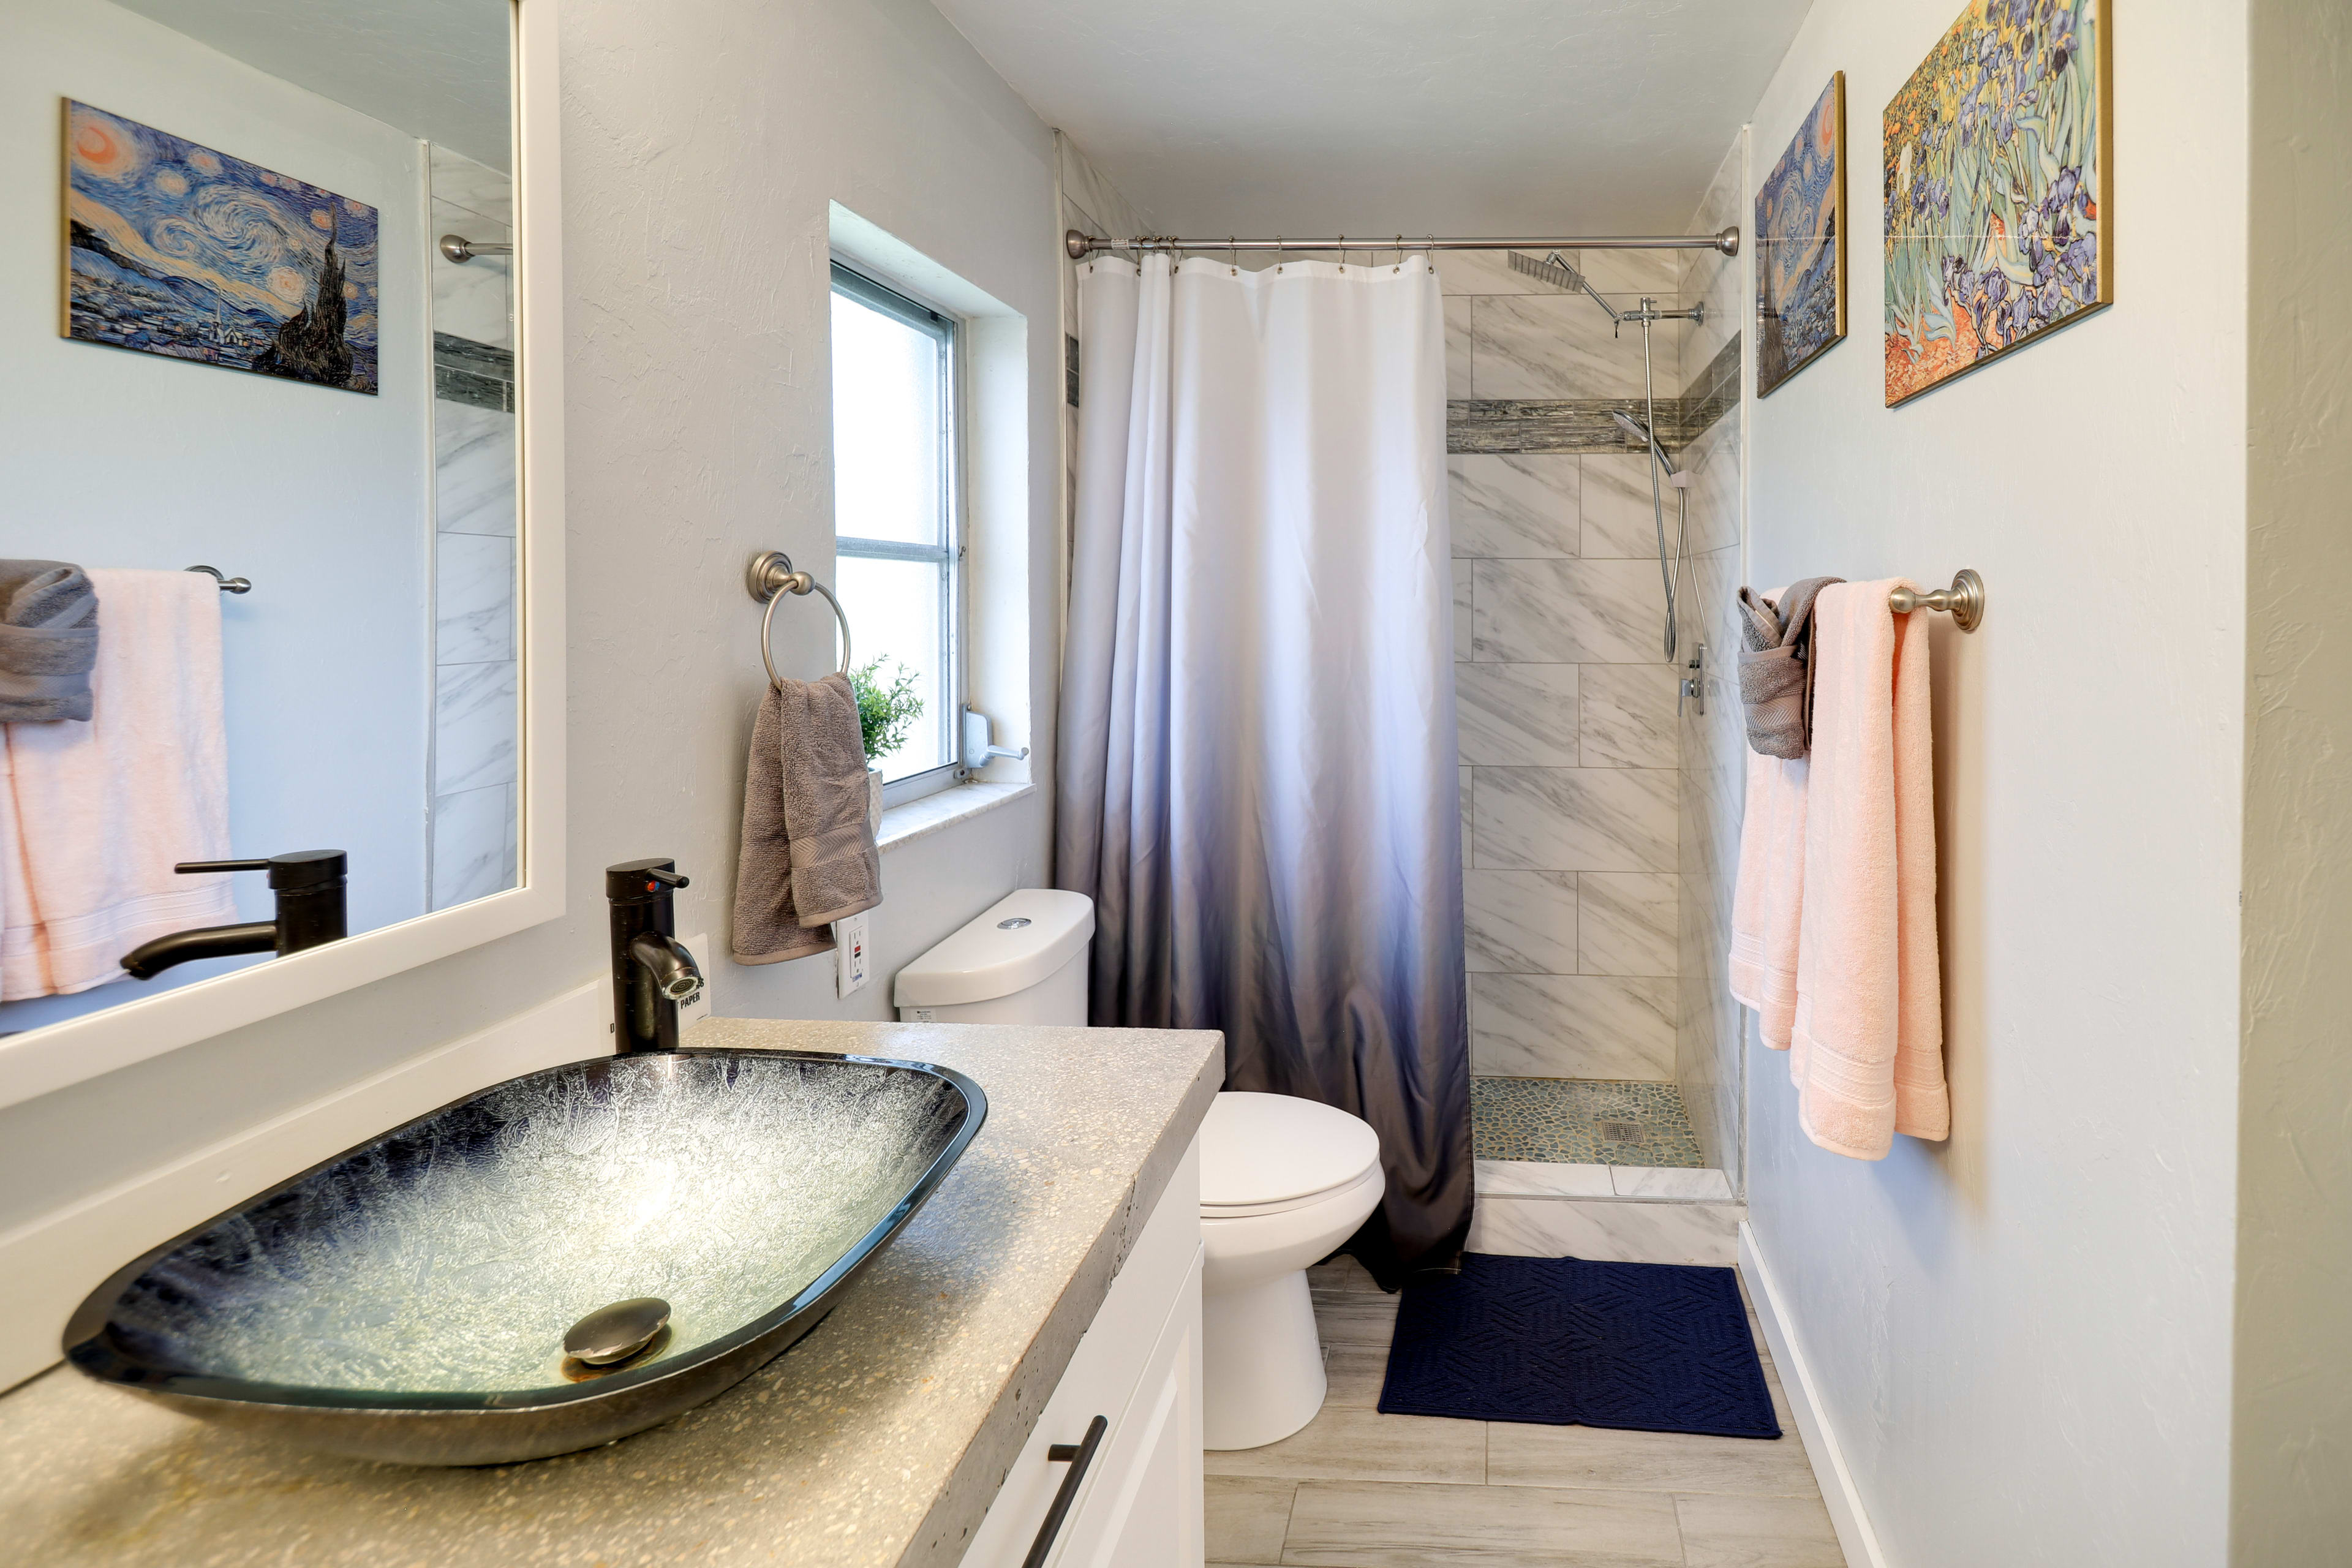 En-Suite Bathroom | Walk-In Shower | Complimentary Toiletries